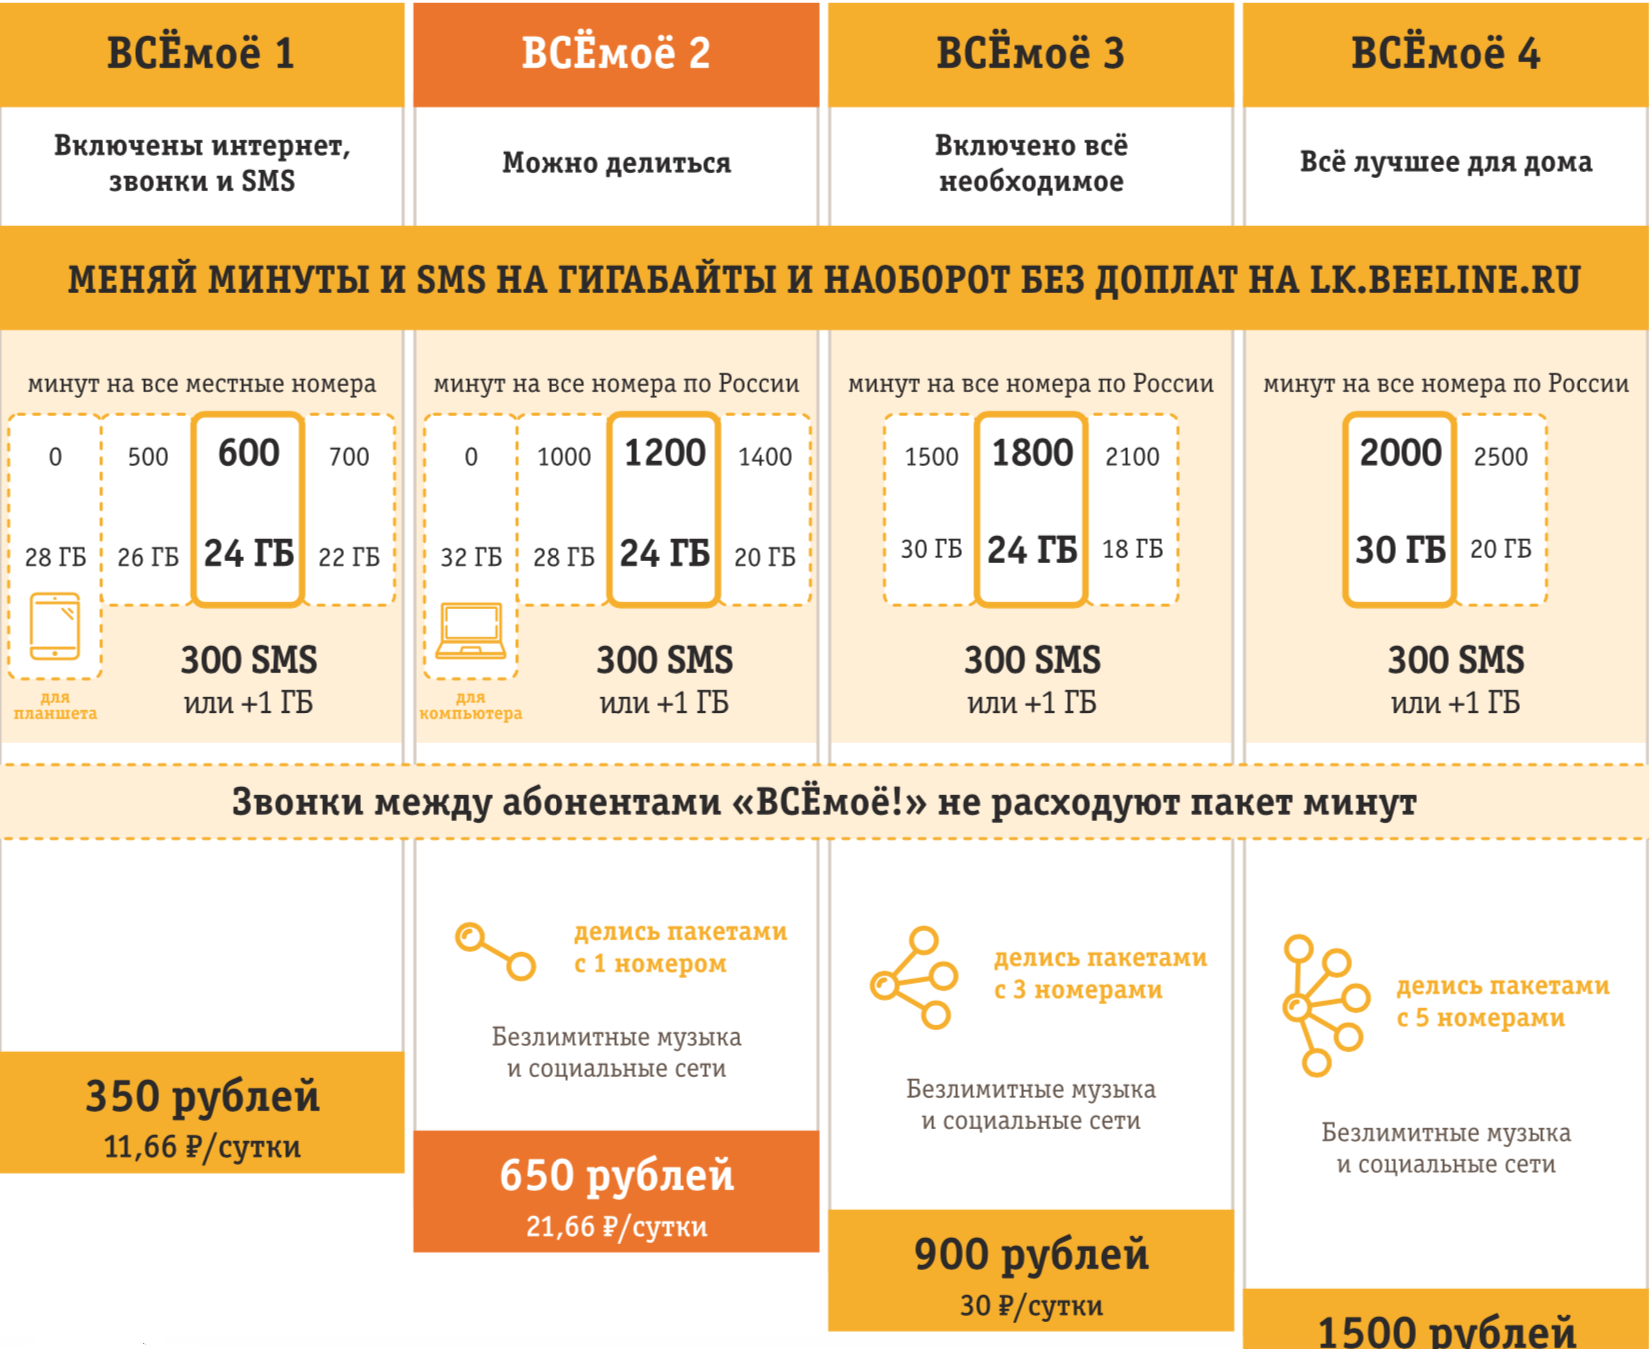 Тарифы билайн для usb-модема 3g/4g в 2020 году - обзор интернет пакетов и стоимости